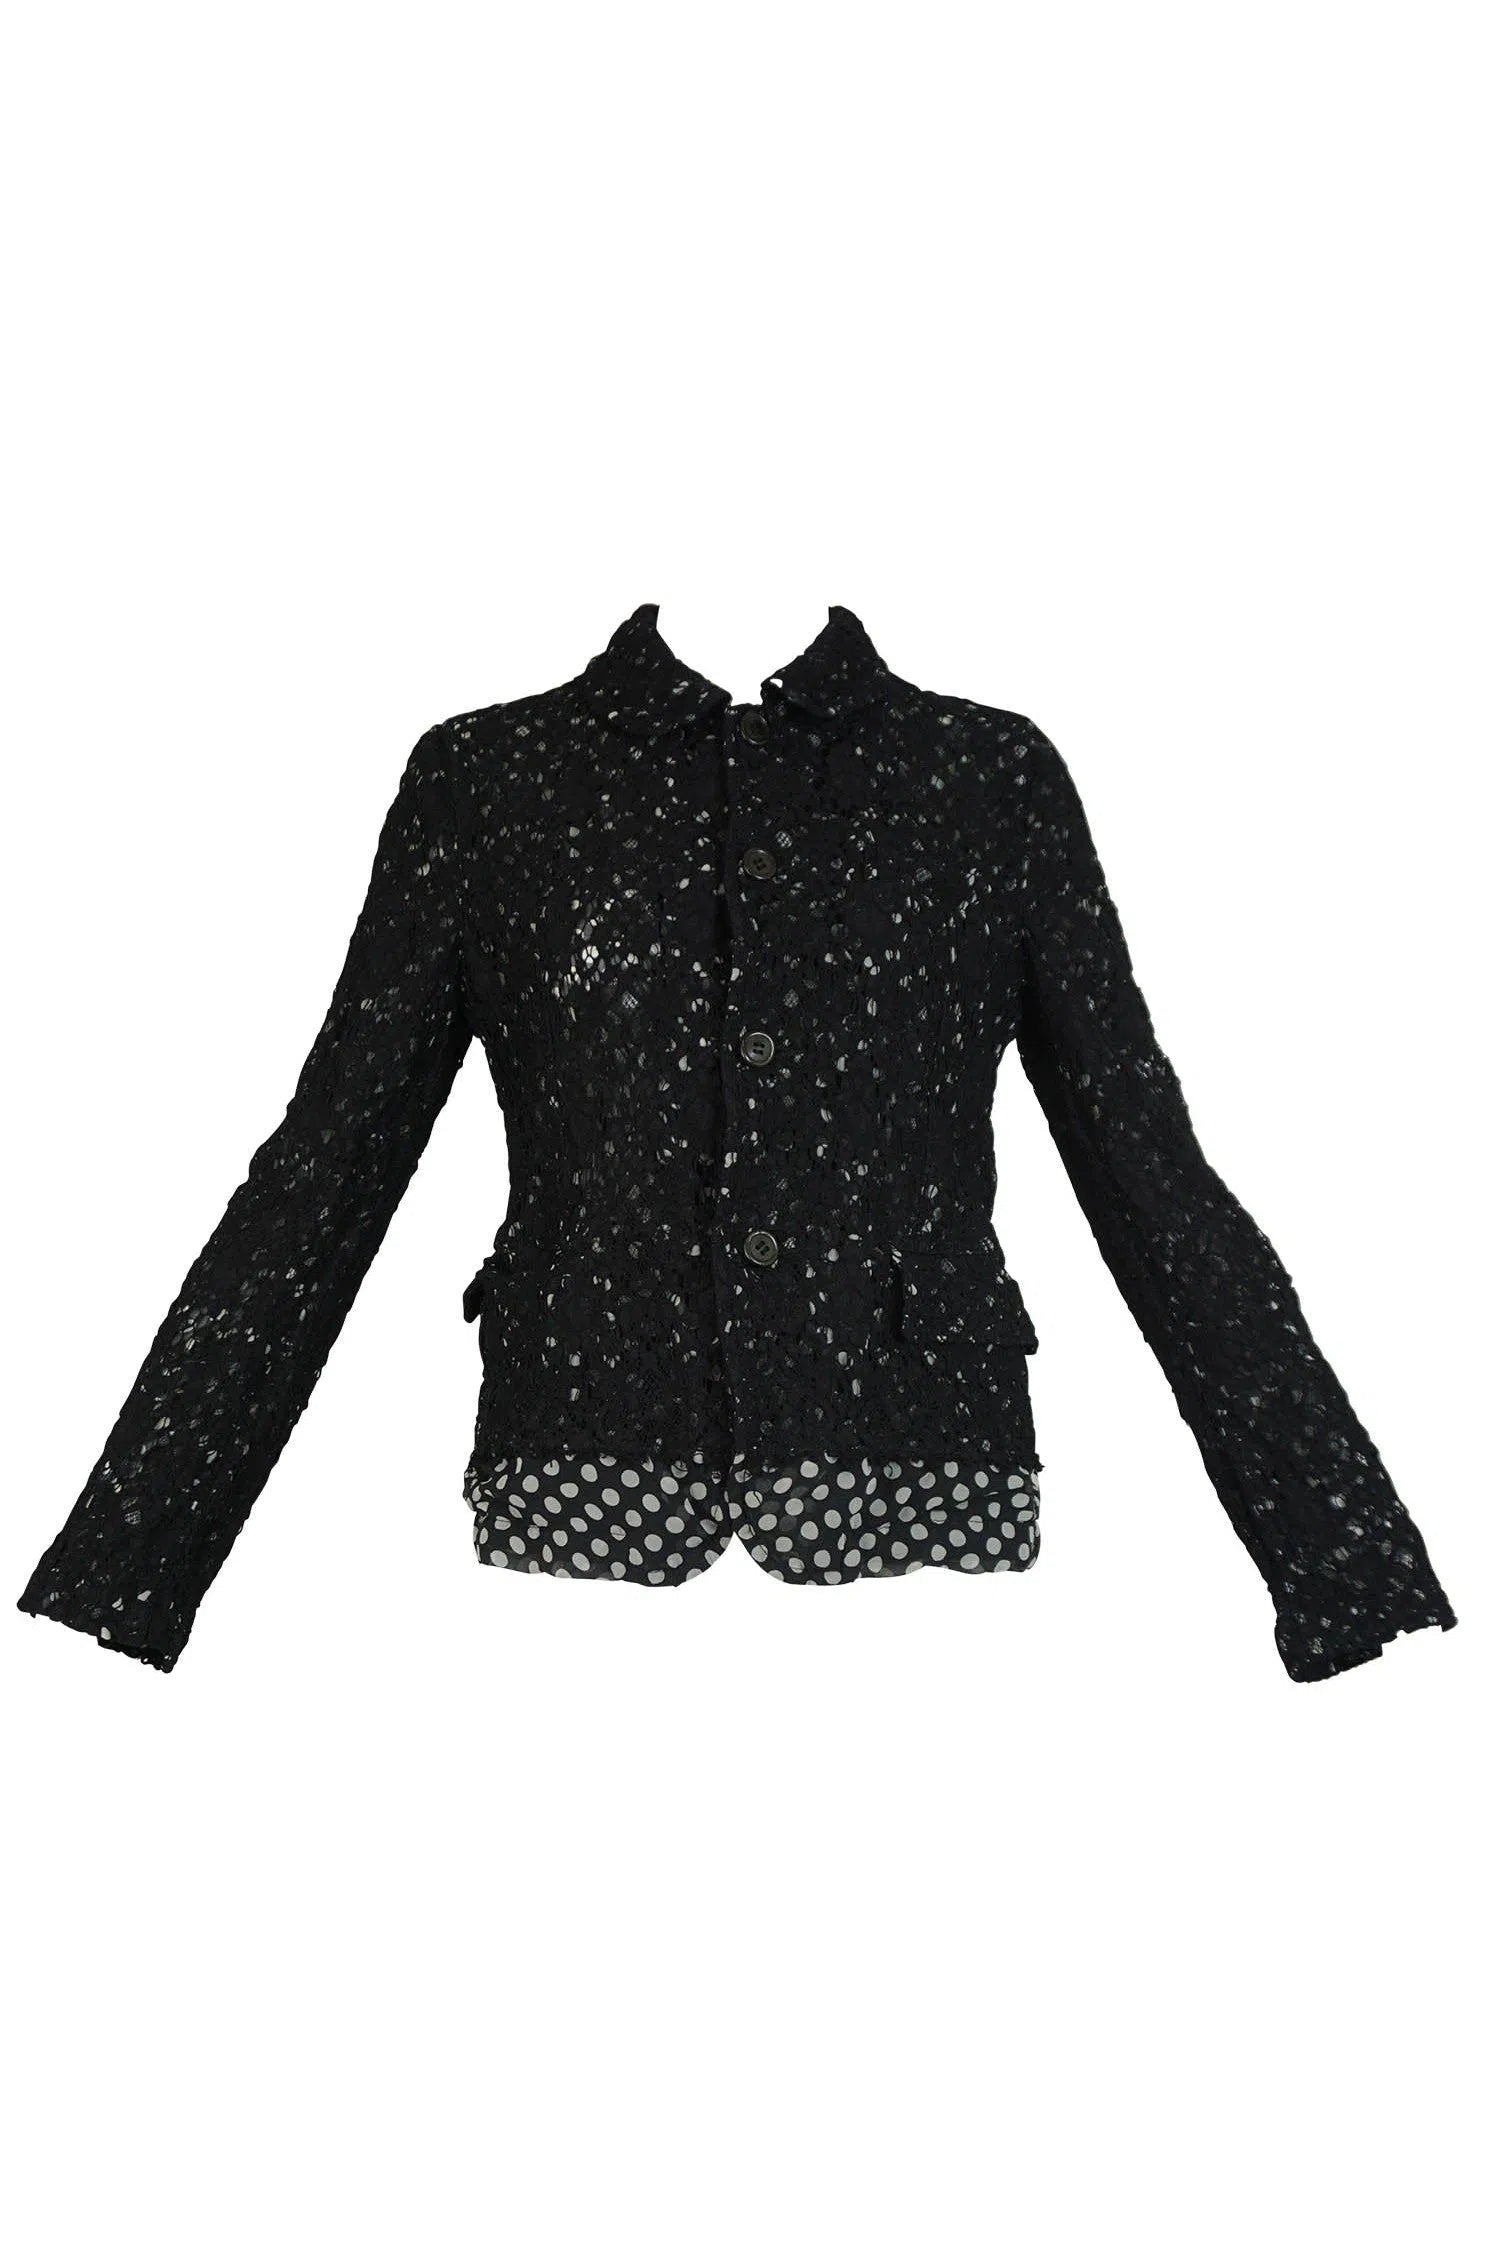 Comme Des Garcon Lace Jacket AD 2011 - Foxy Couture Carmel